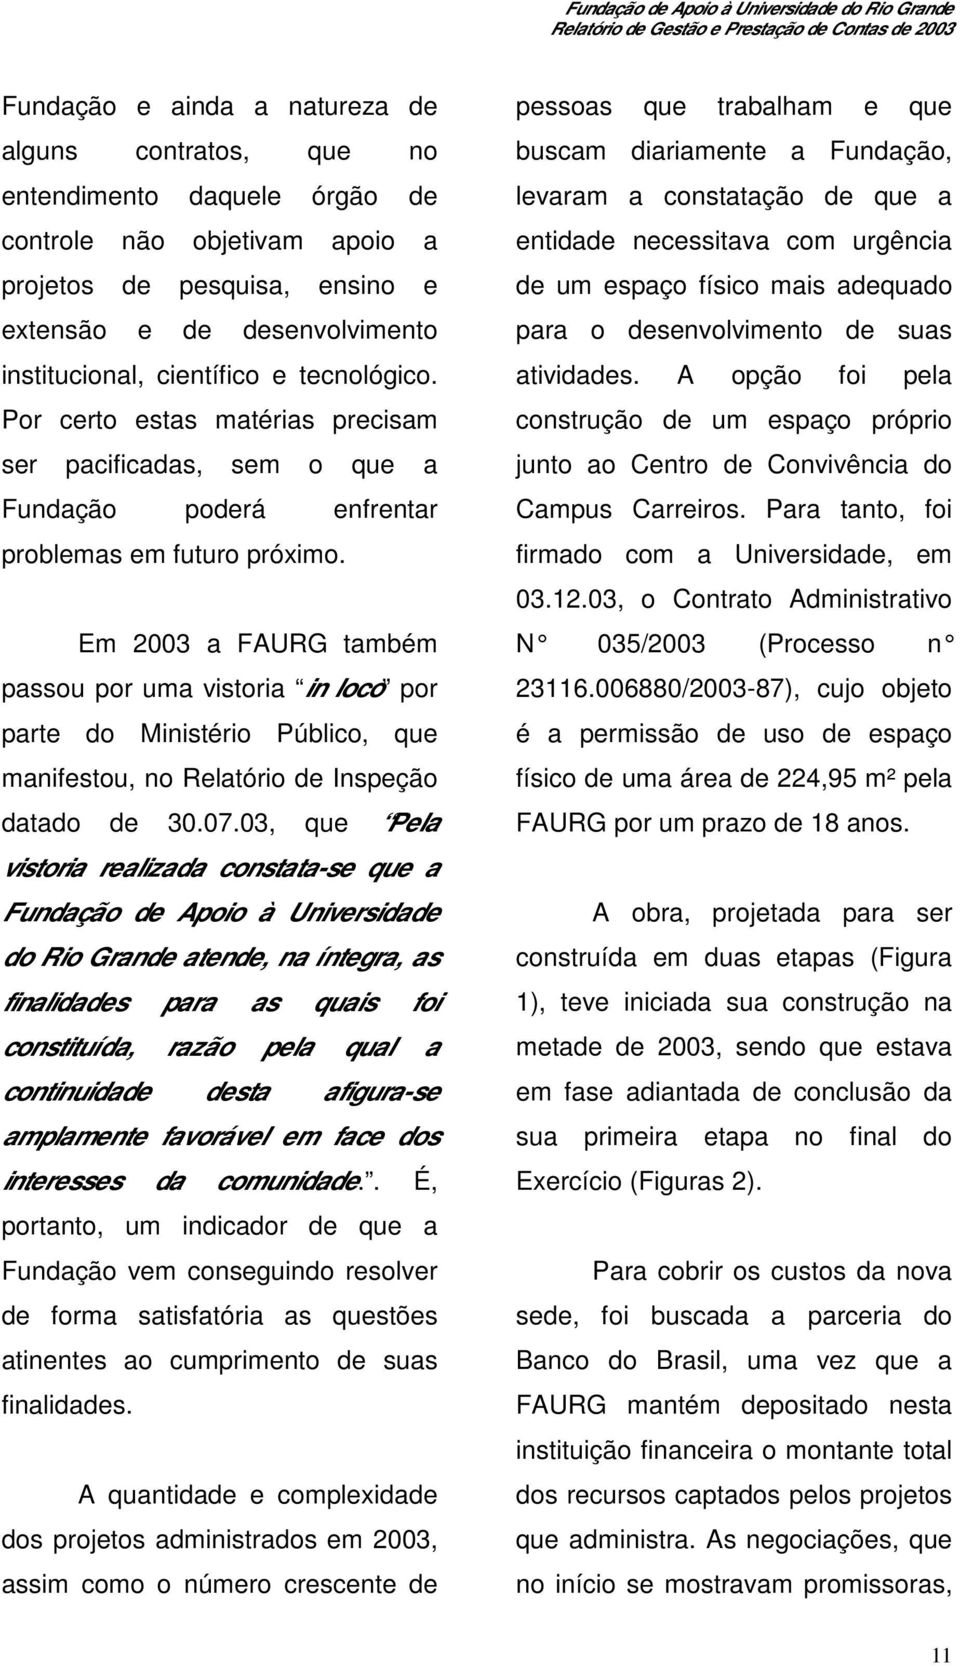 Em 2003 a FAURG também passou por uma vistoria in loco por parte do Ministério Público, que manifestou, no Relatório de Inspeção datado de 30.07.